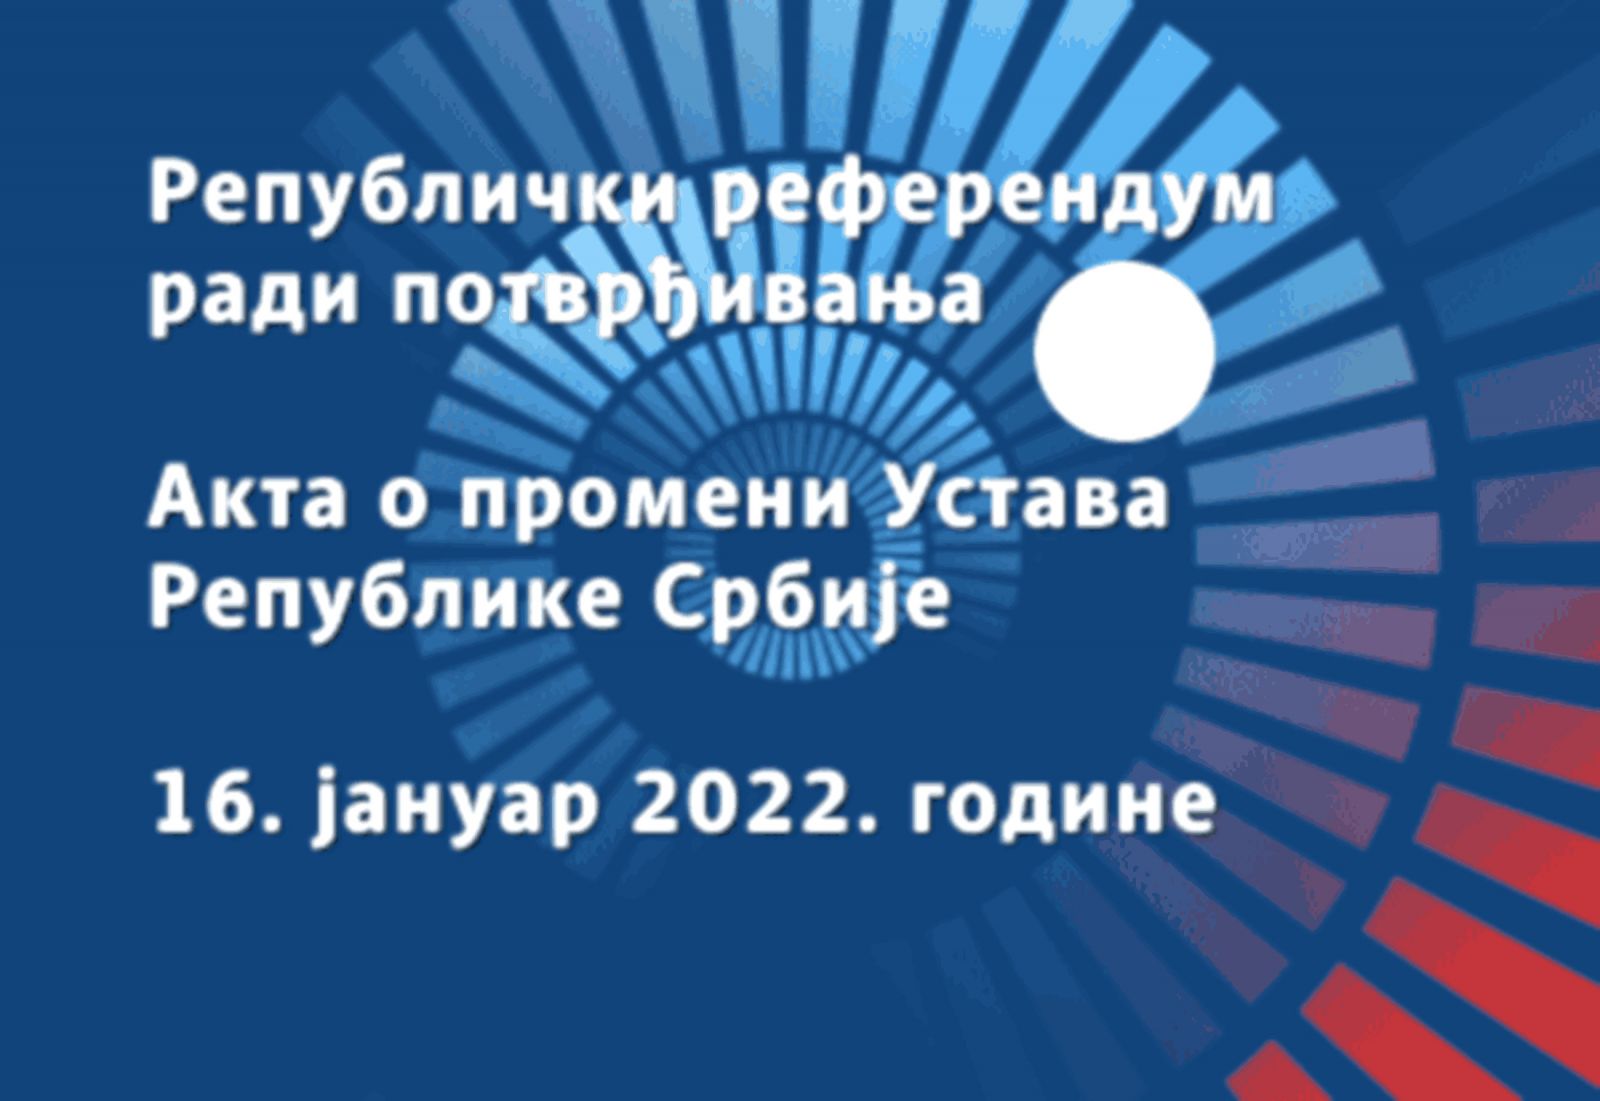 Republički referendum radi potvrđivanja Akta o promeni Ustava Republike Srbije, 16. januar 2022. godine